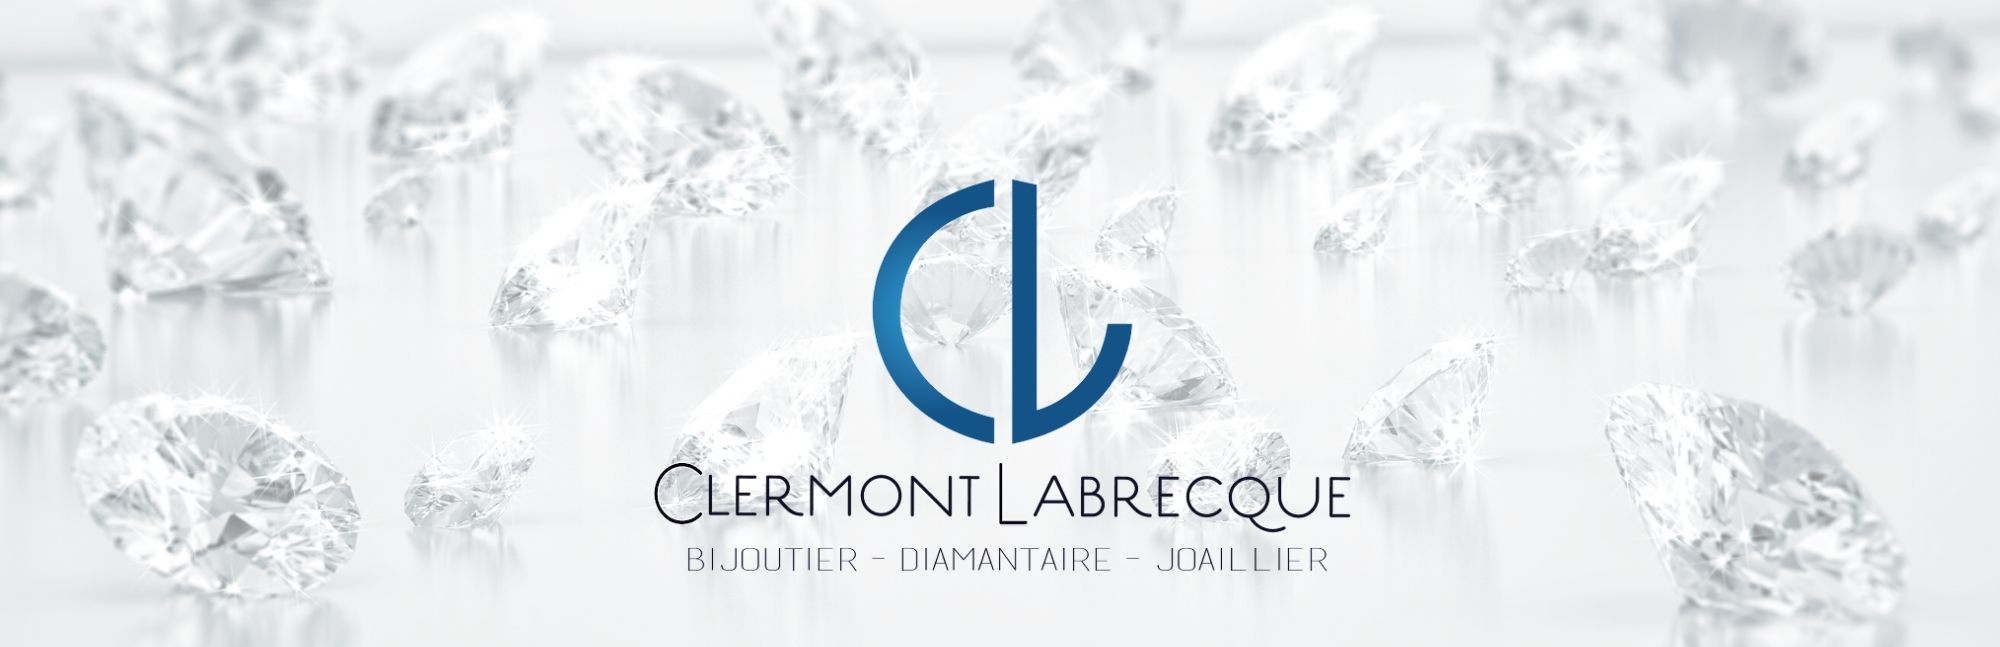 Bijouterie Clermont Labrecque 2